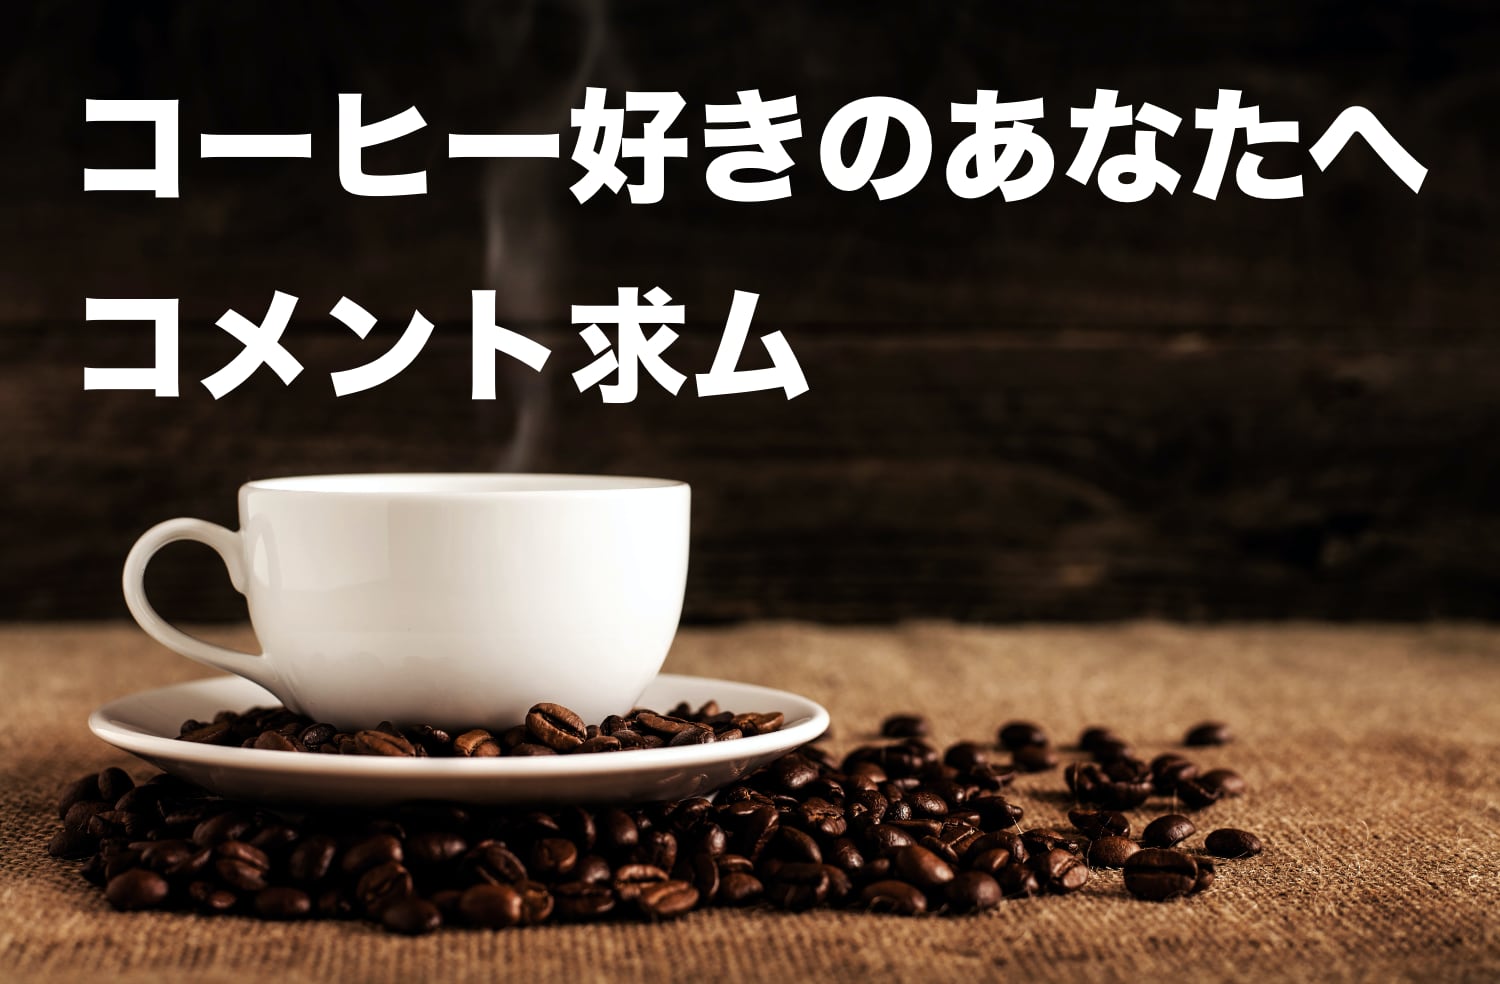 【コメント求む】コーヒー三種の神器「コーヒーミル、豆、ポット」のおすすめを教えてください。